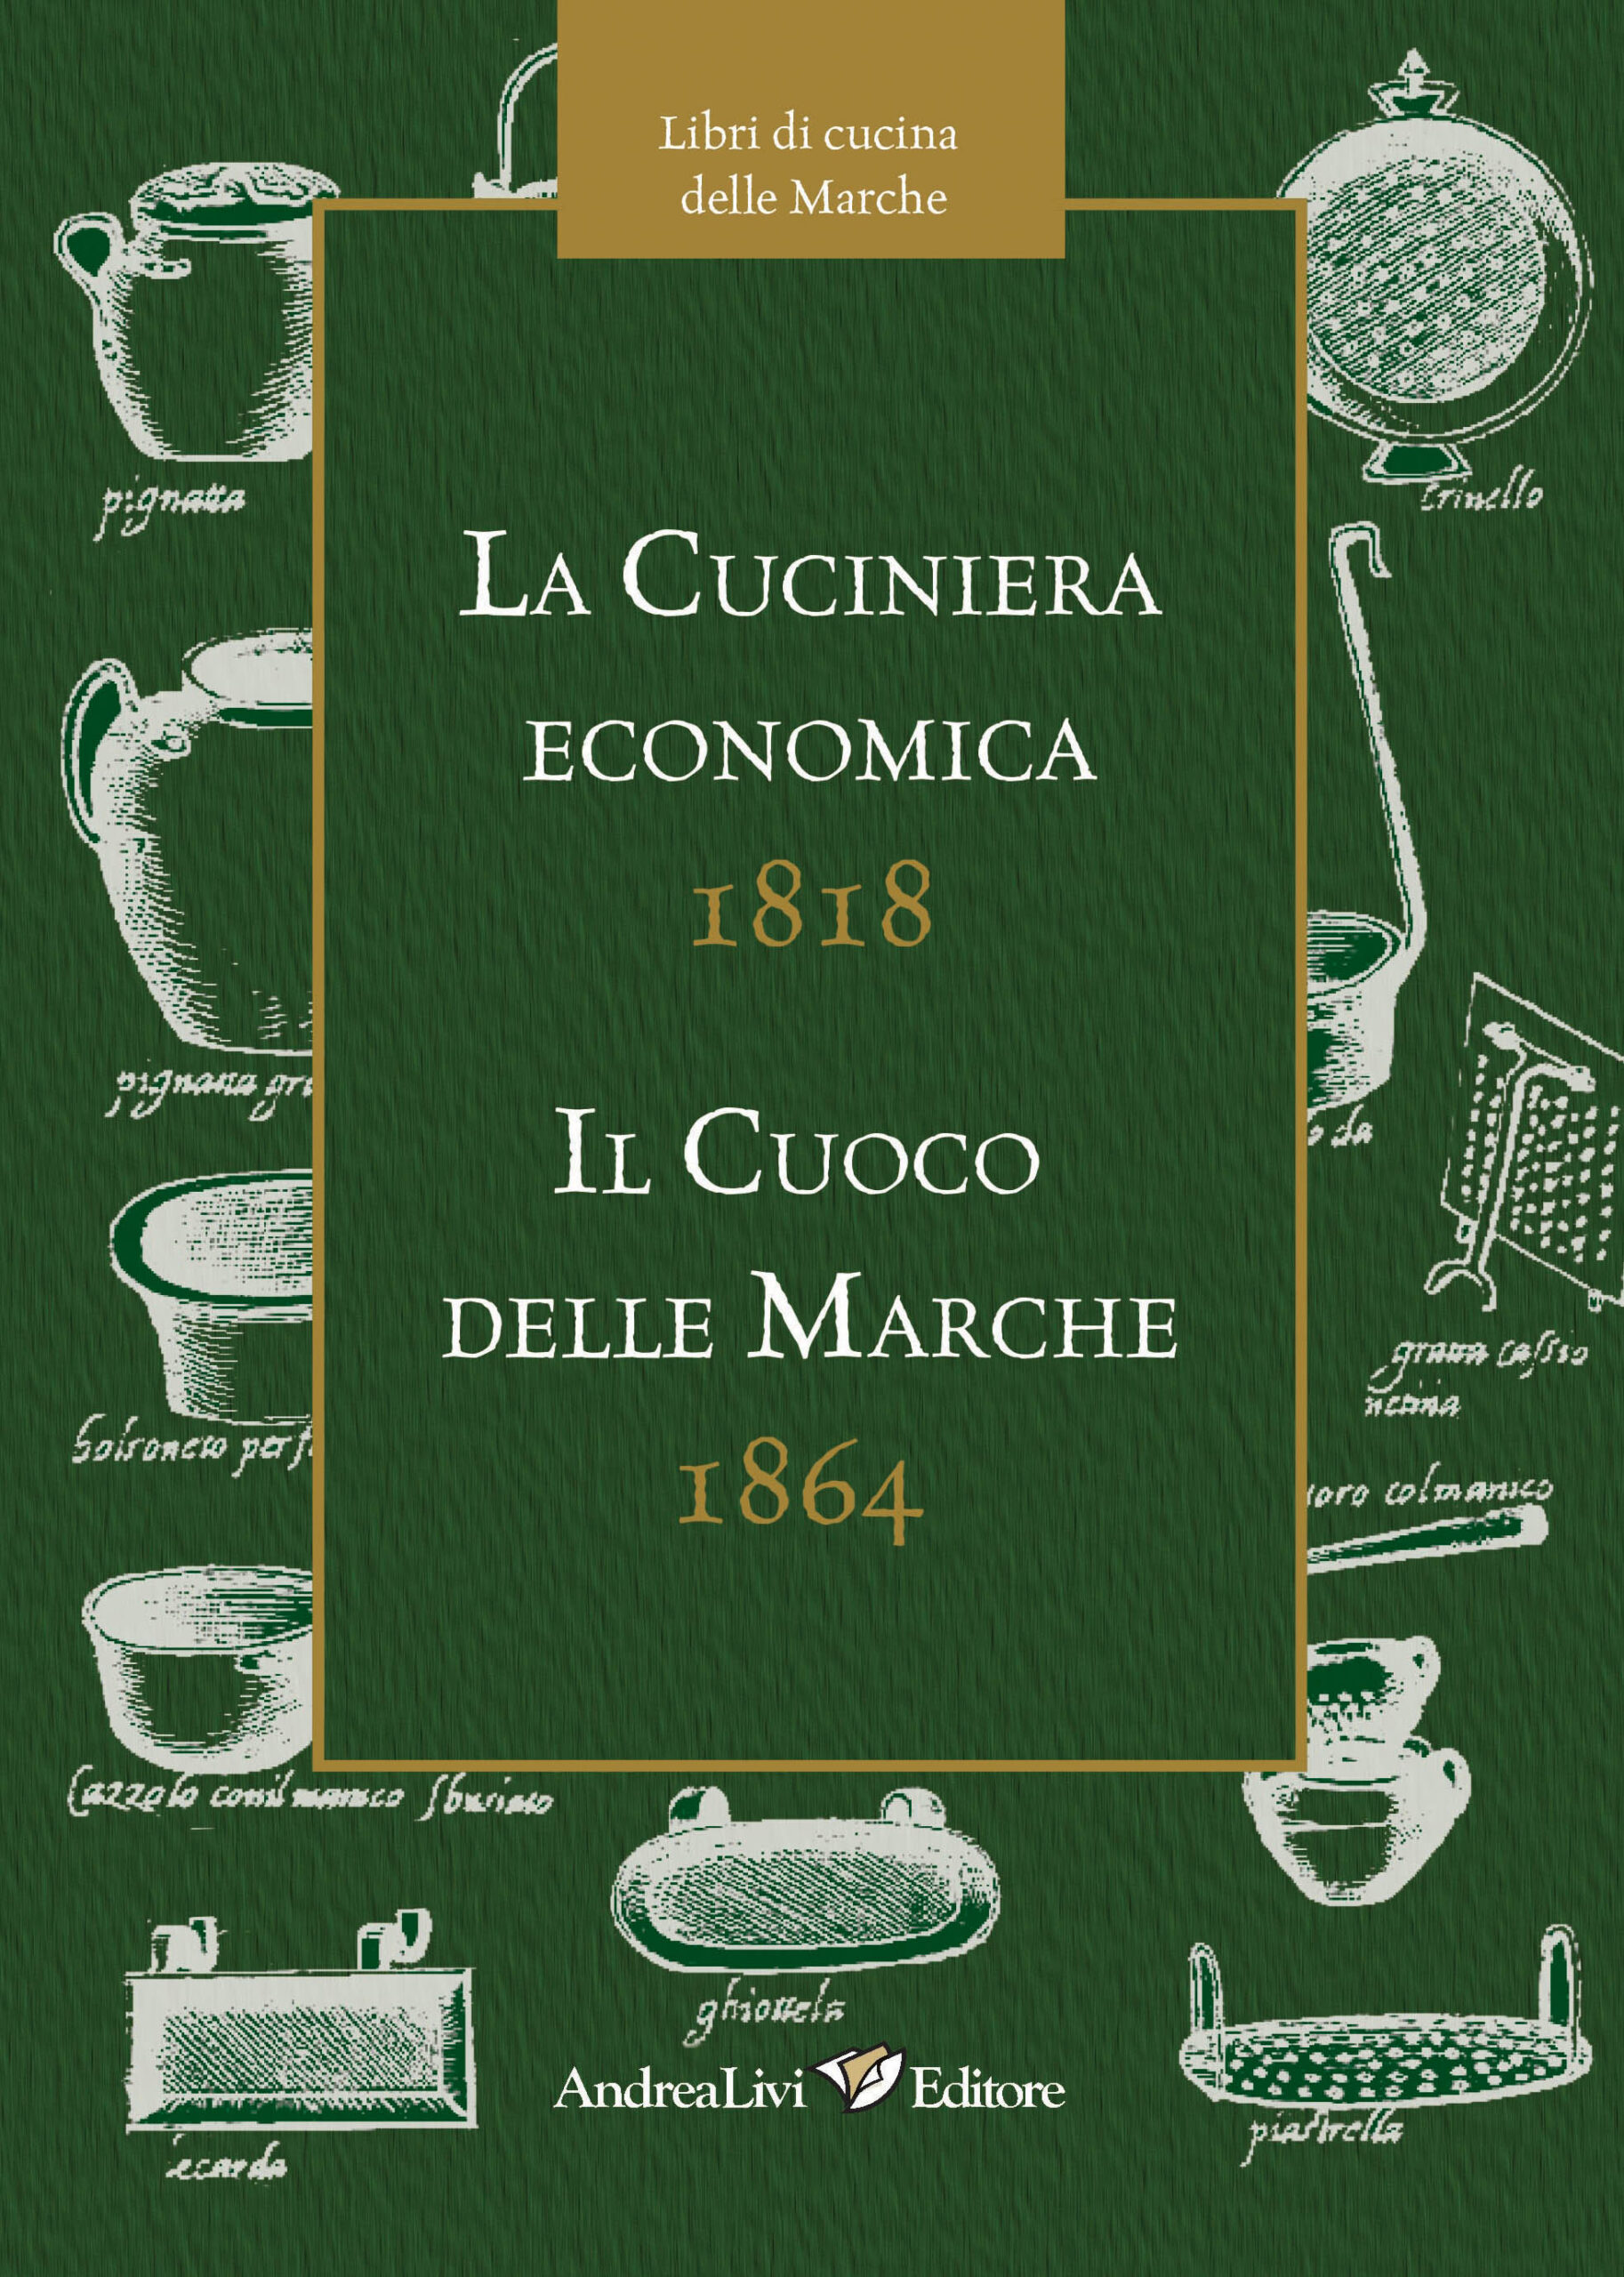 La cuciniera economica 1818 – Il cuoco delle Marche 1864